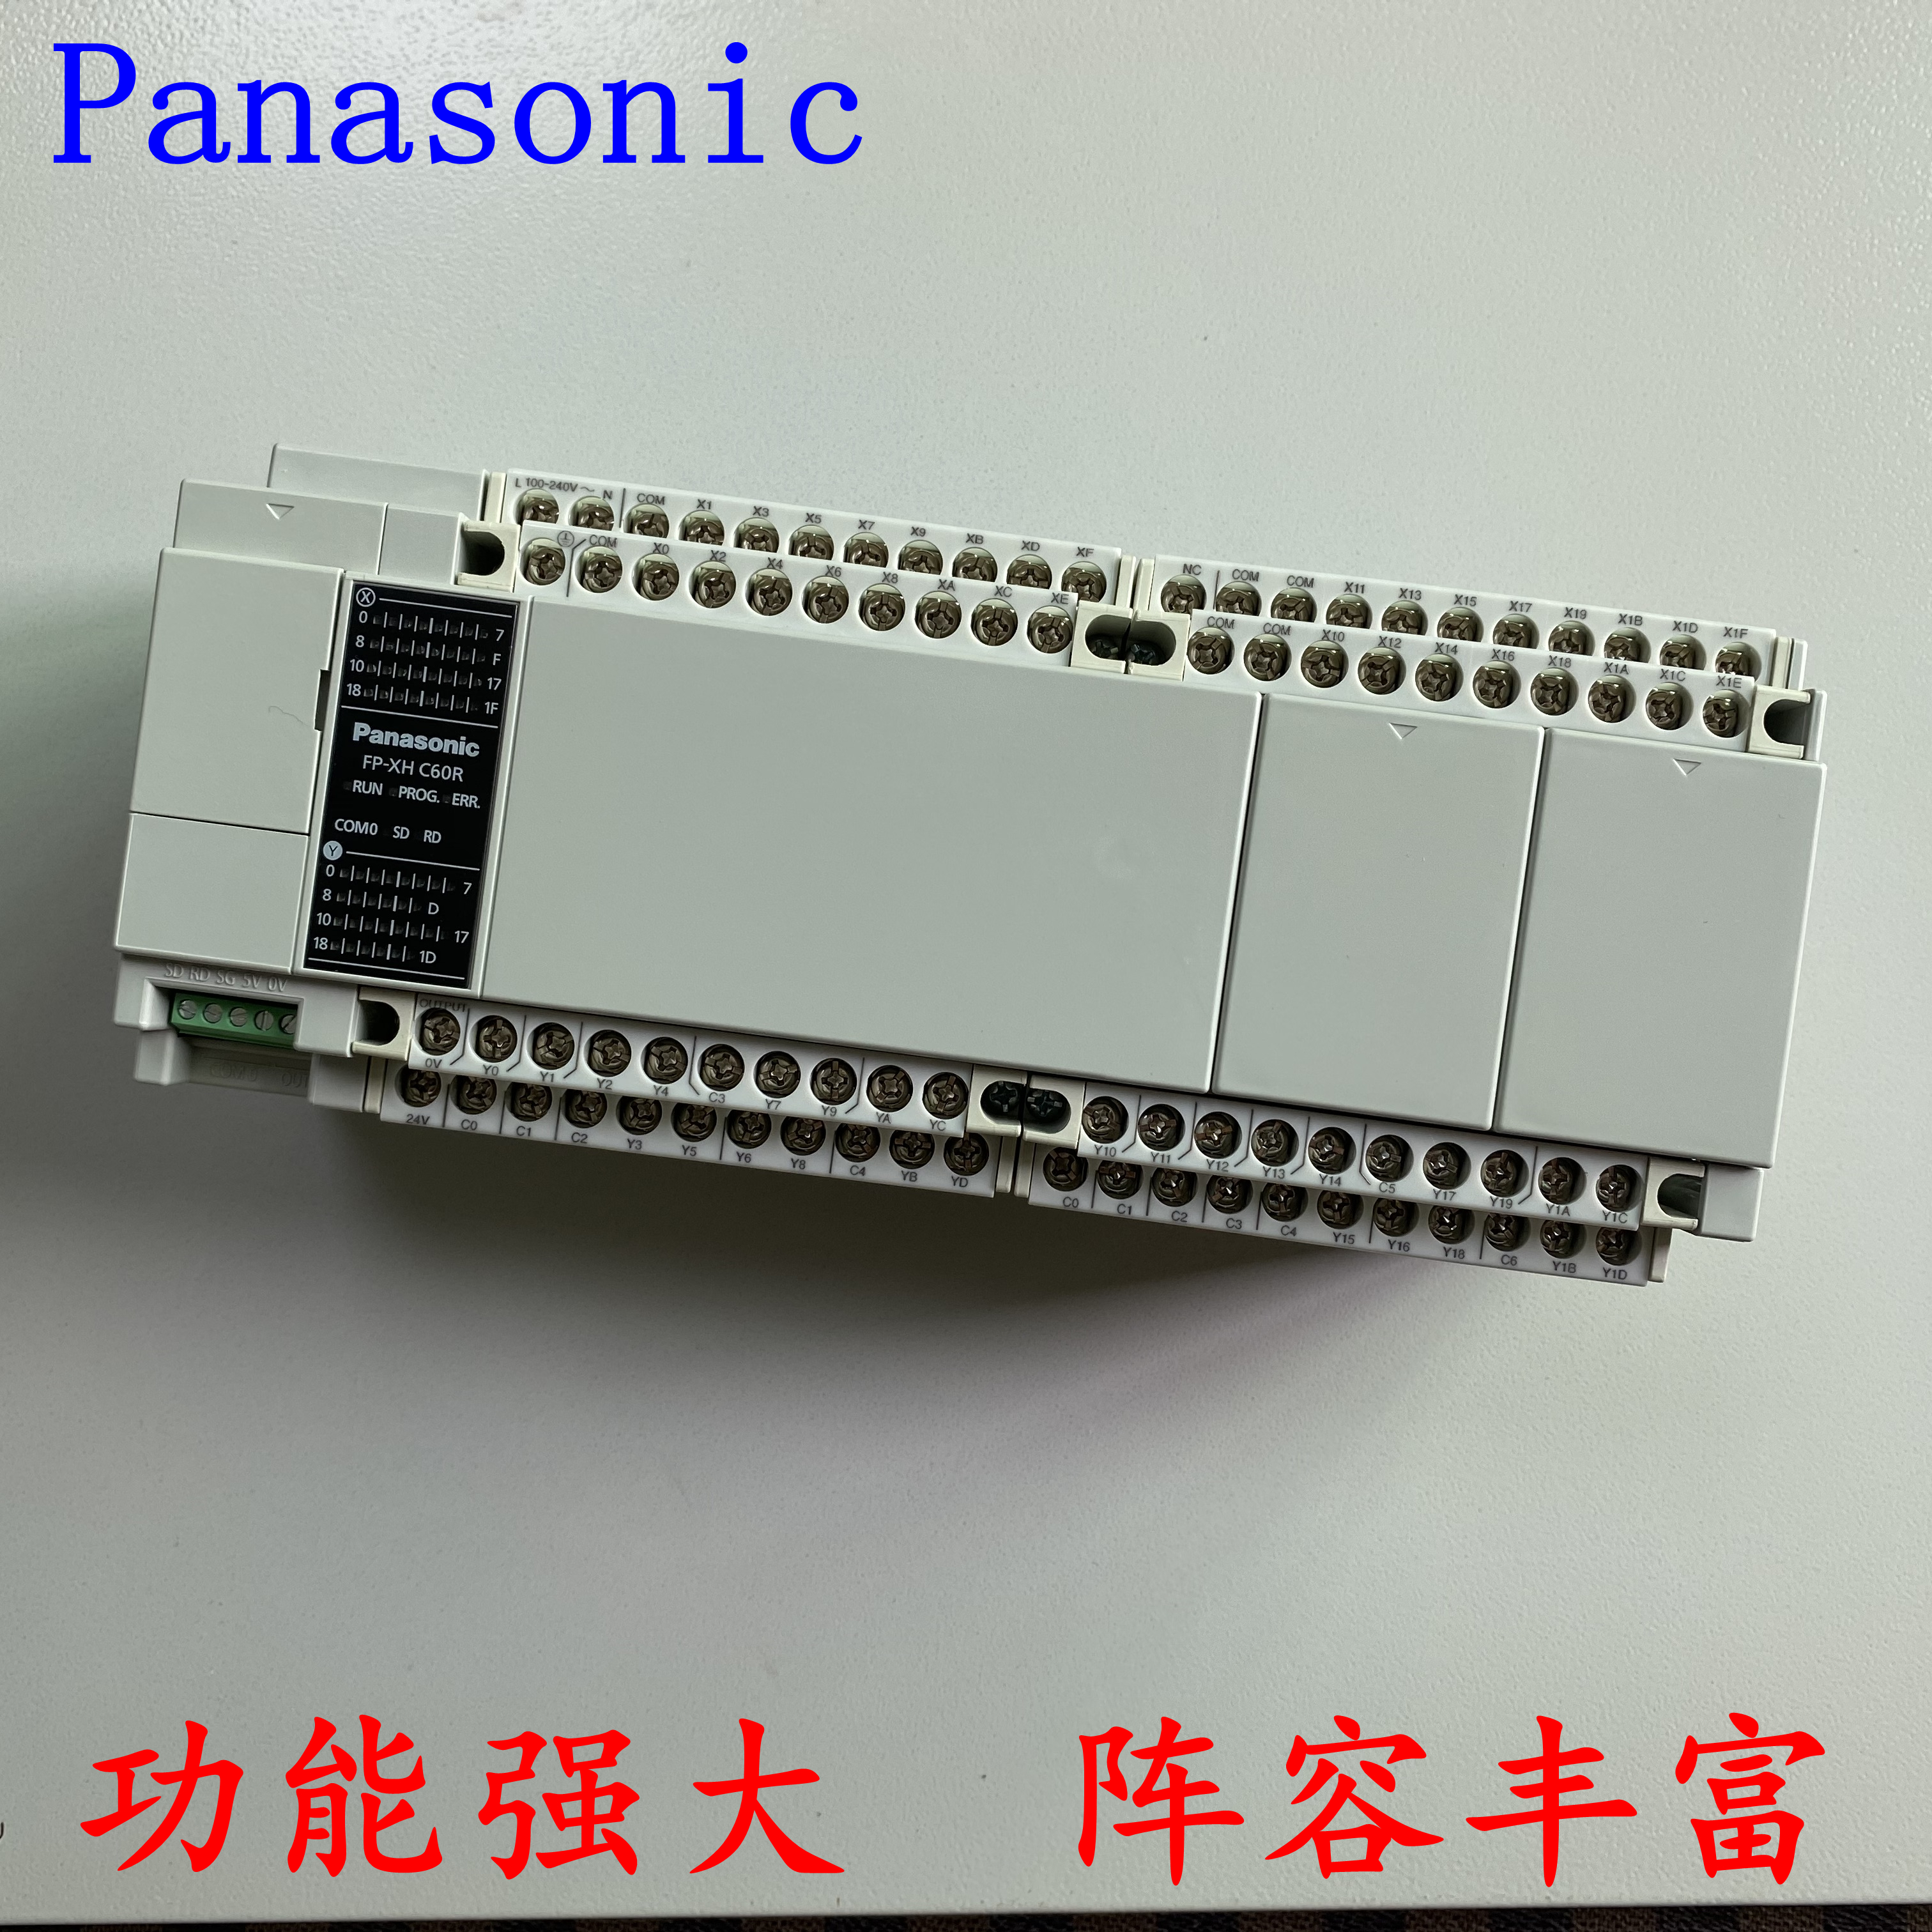 深圳市可编程控制器/PLC厂家指定供应可编程控制器/PLC订货号AFPXHC60T型号FP-XH C60T大量现货销售